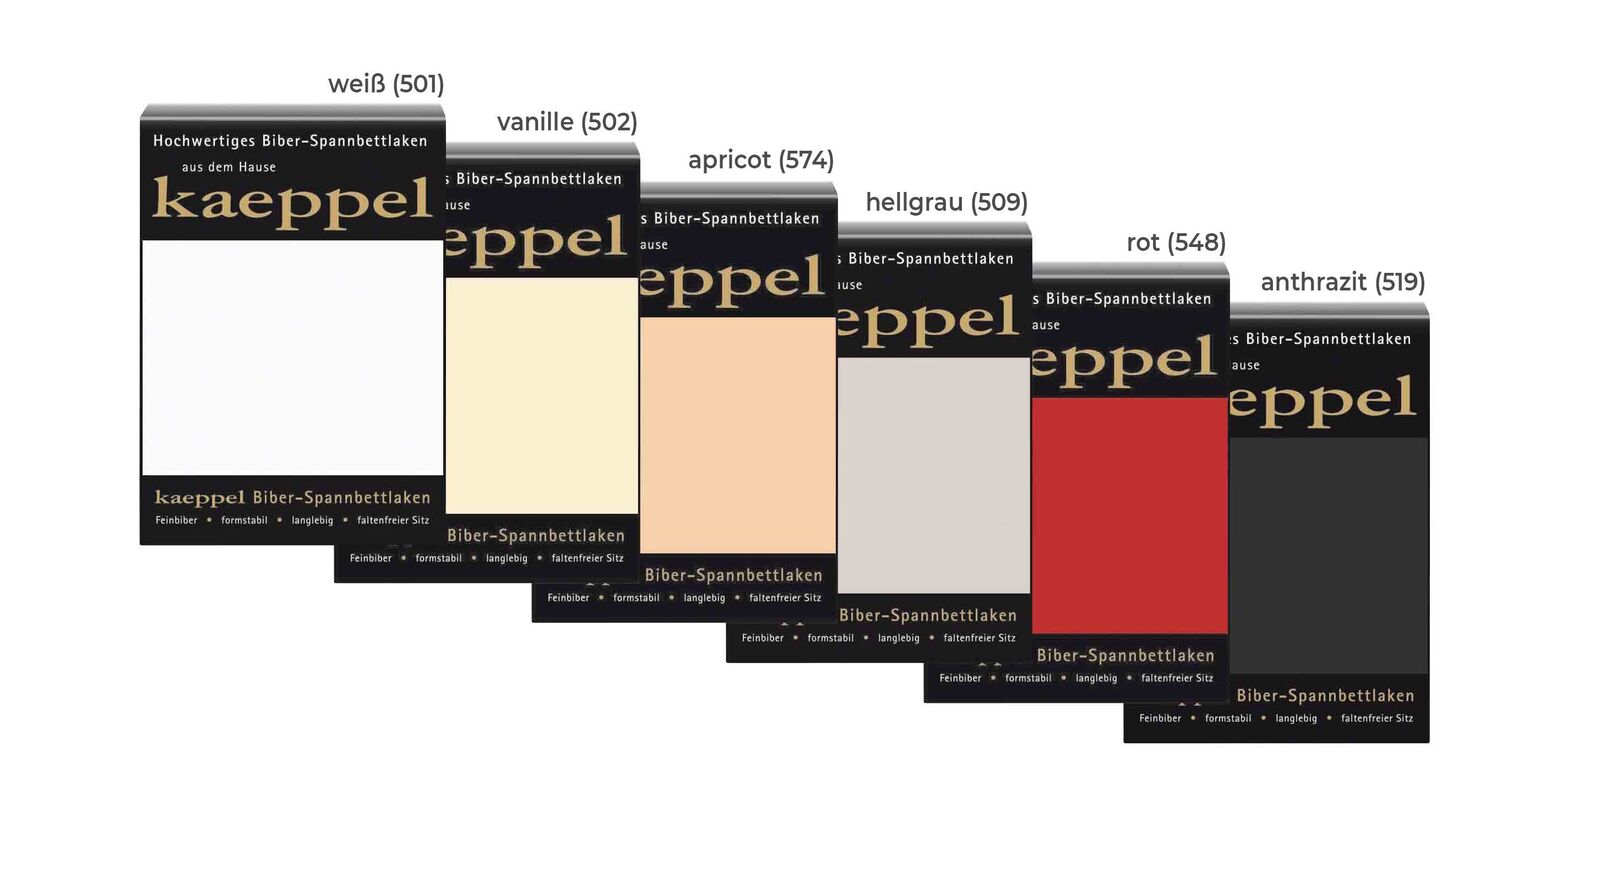 Kaeppel Biber-Spannbetttuch in verschiedenen Farben